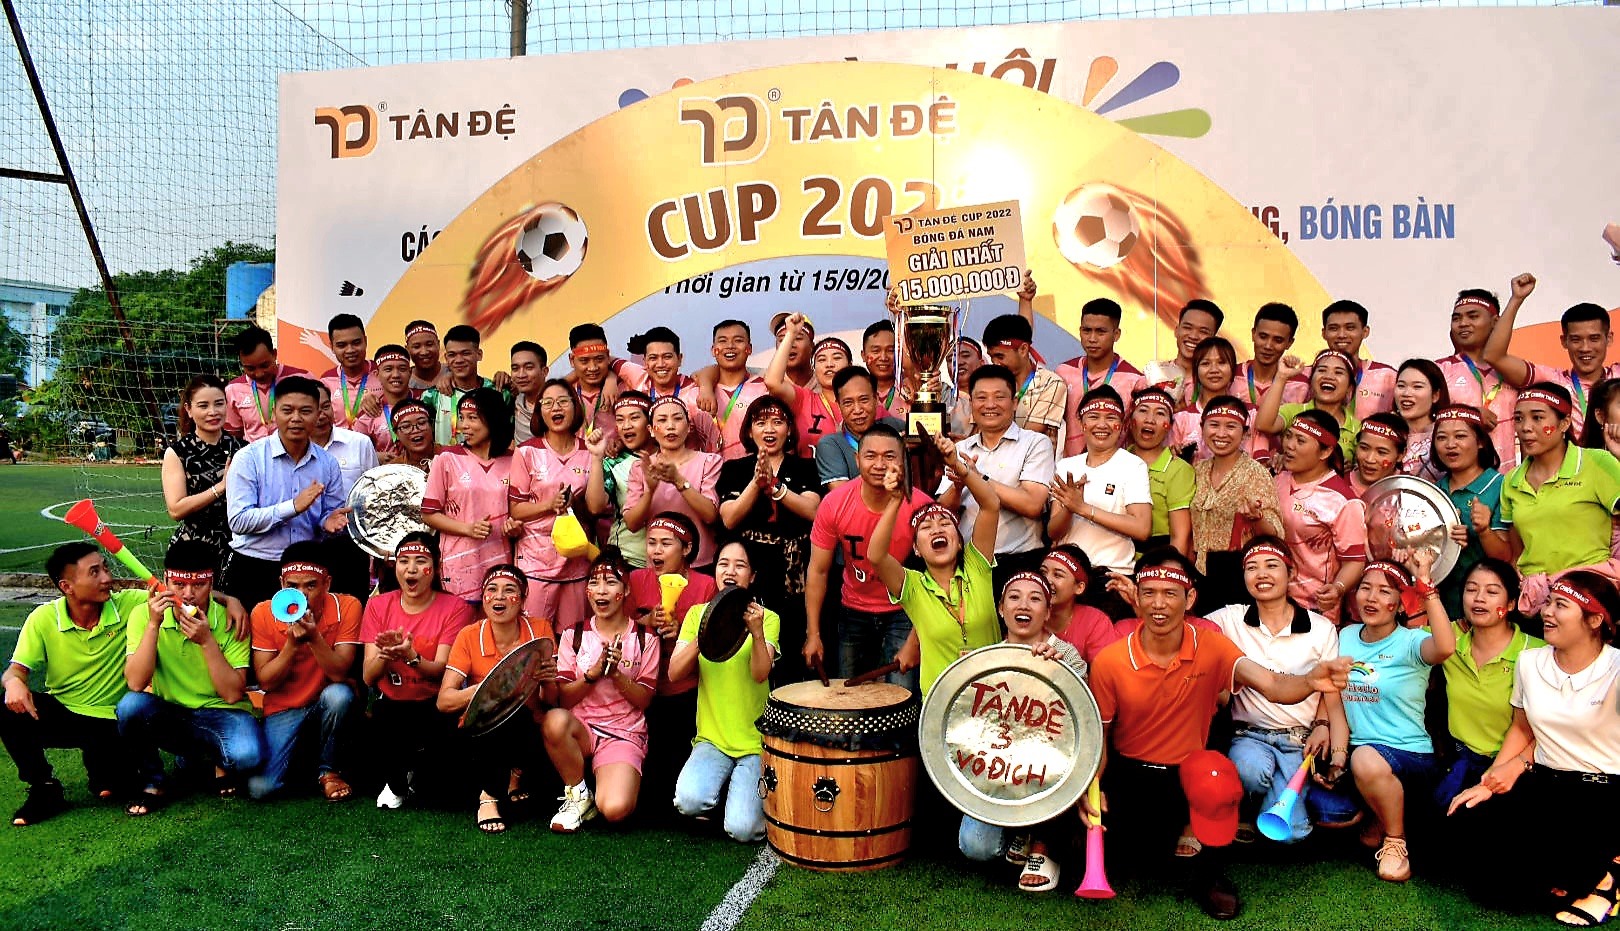 Thái Bình: Doanh nghiệp chi gần 1 tỉ đồng tổ chức giải thể thao cho công nhân lao động